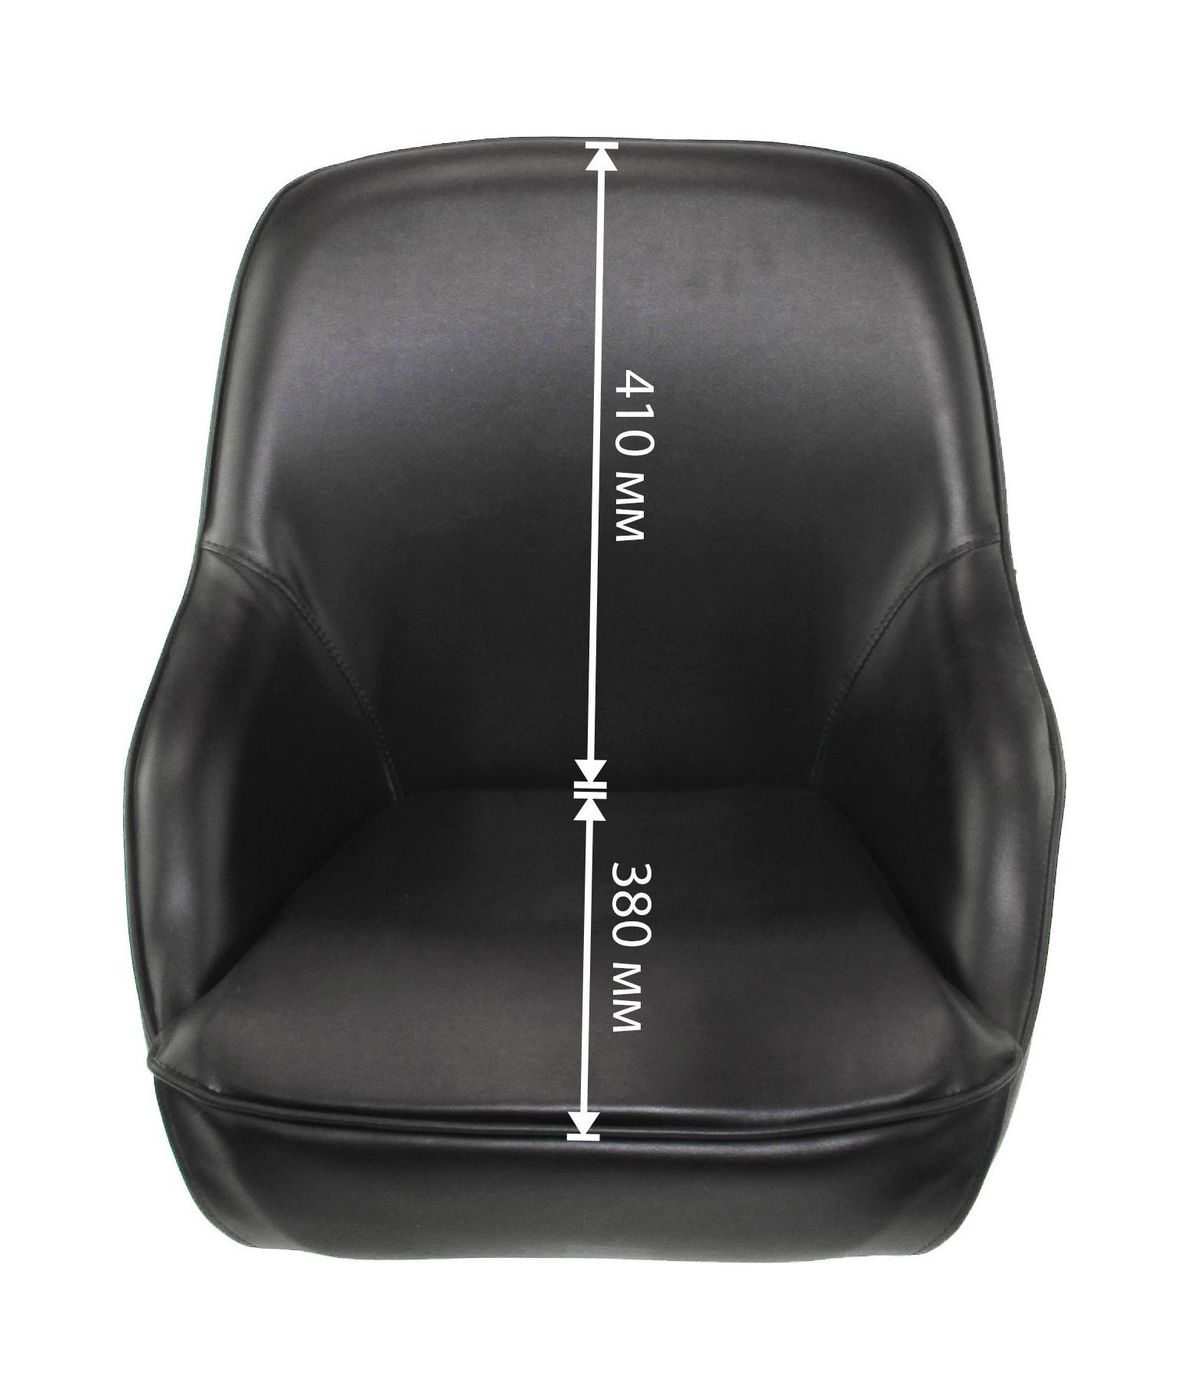 Кресло ADMIRAL мягкое, материал черный винил 1061420990 - фото 6